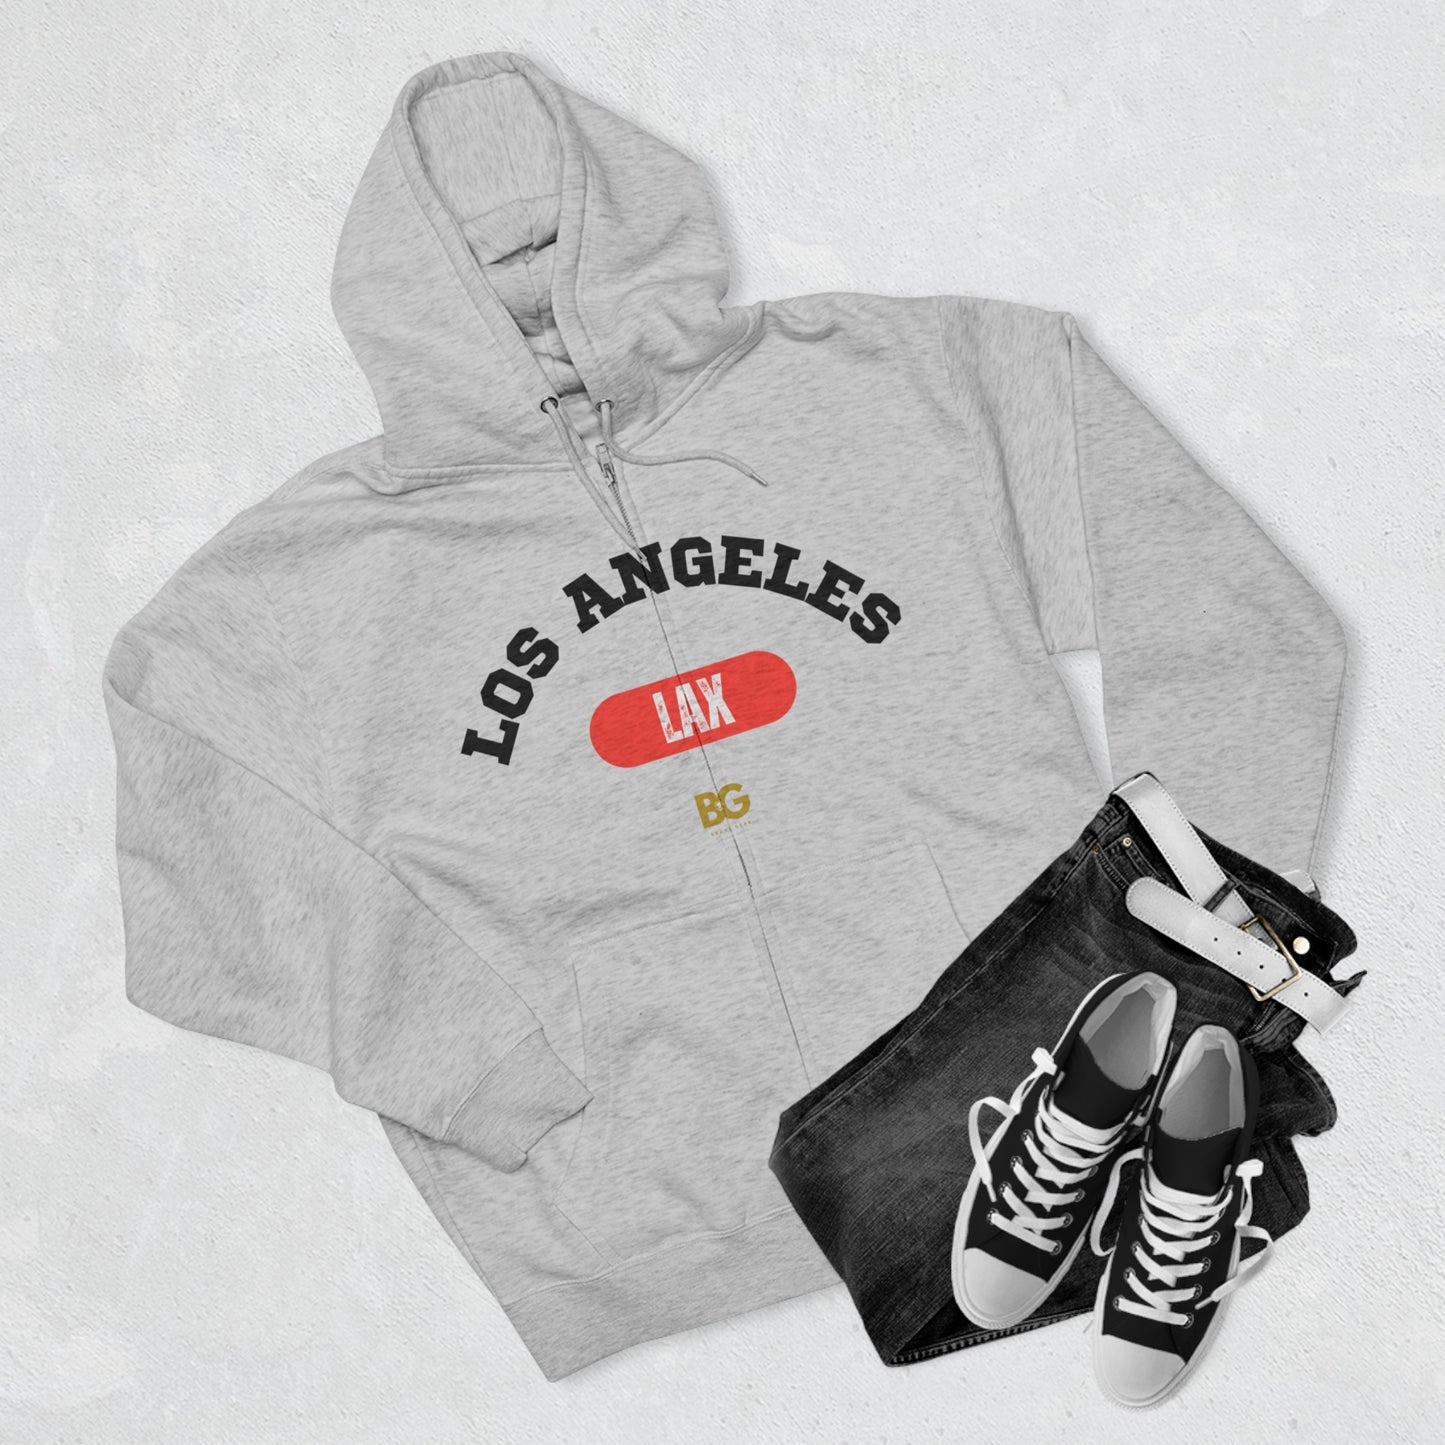 BG "Los Angeles LAX" Premium Full Zip Hoodie